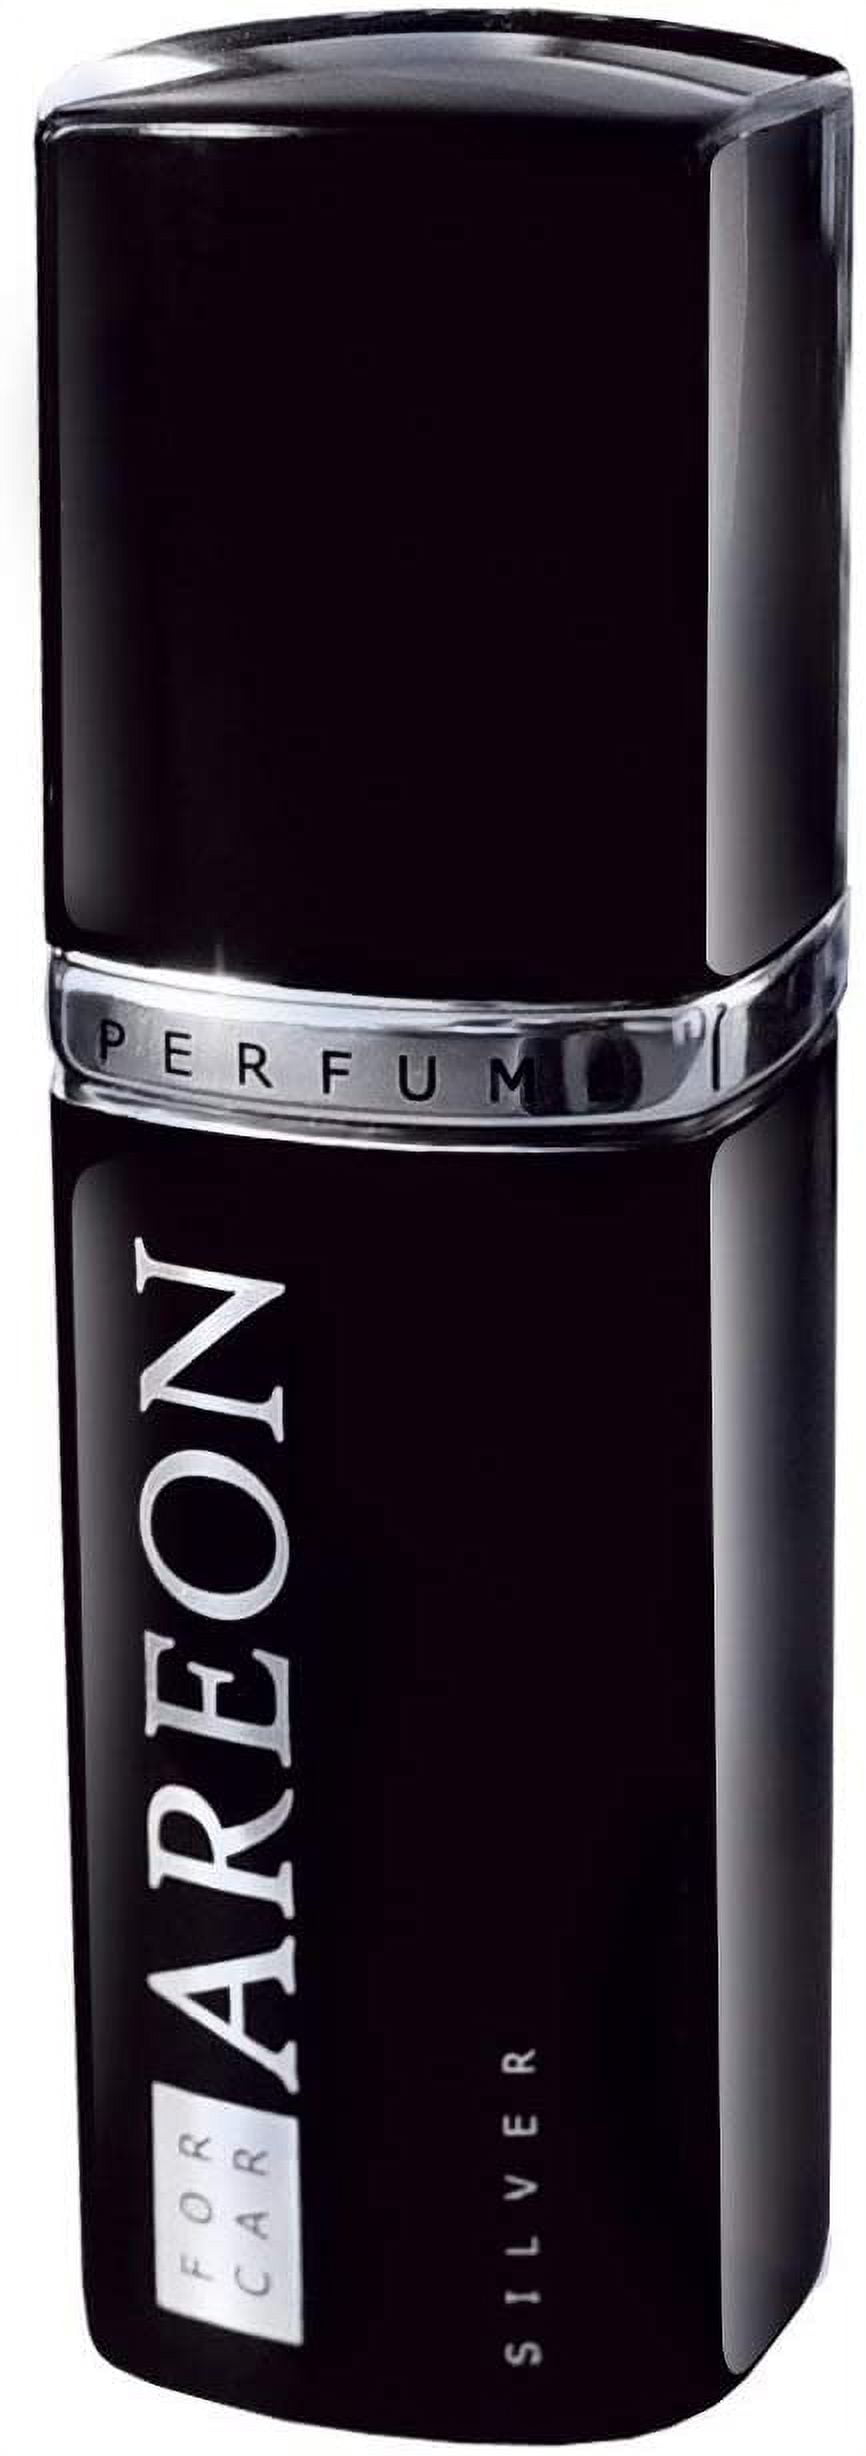 Areon Car Perfume 1.7 Fl Oz. (50ml) Lux Cologne Air Freshener, Silver 